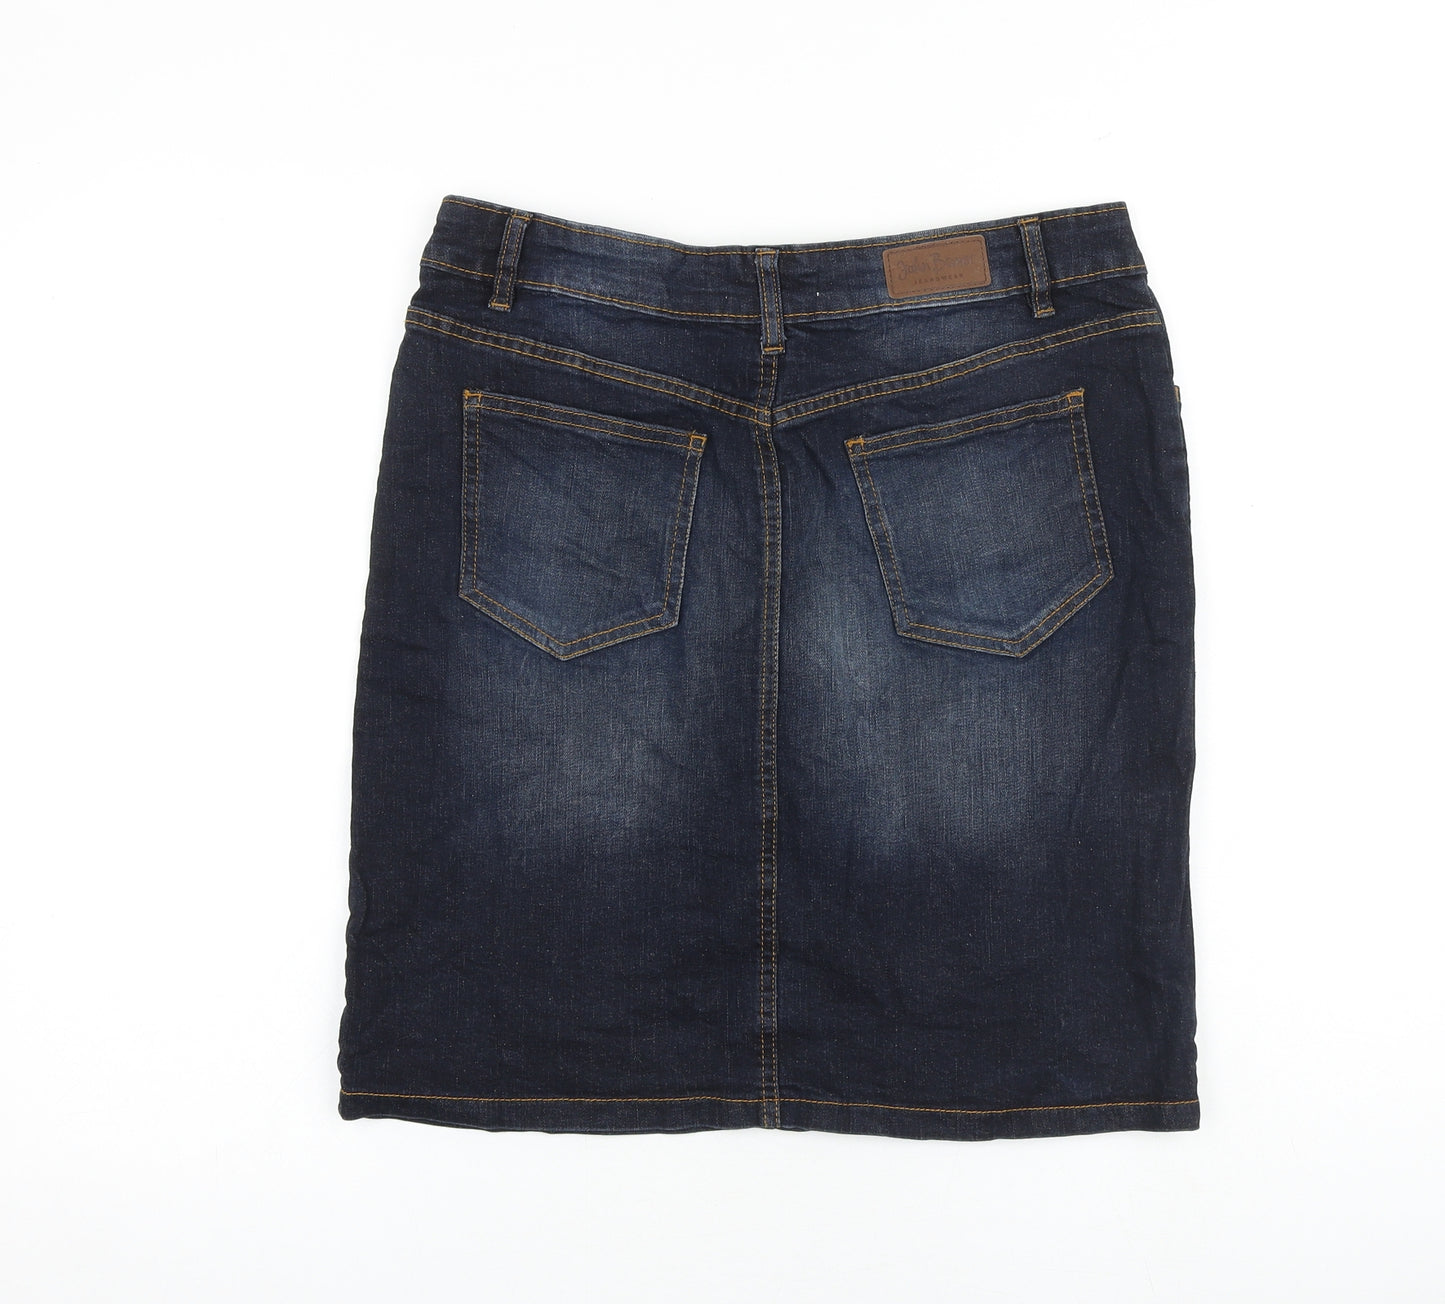 John Baner Womens Blue Cotton A-Line Skirt Size 14 Zip